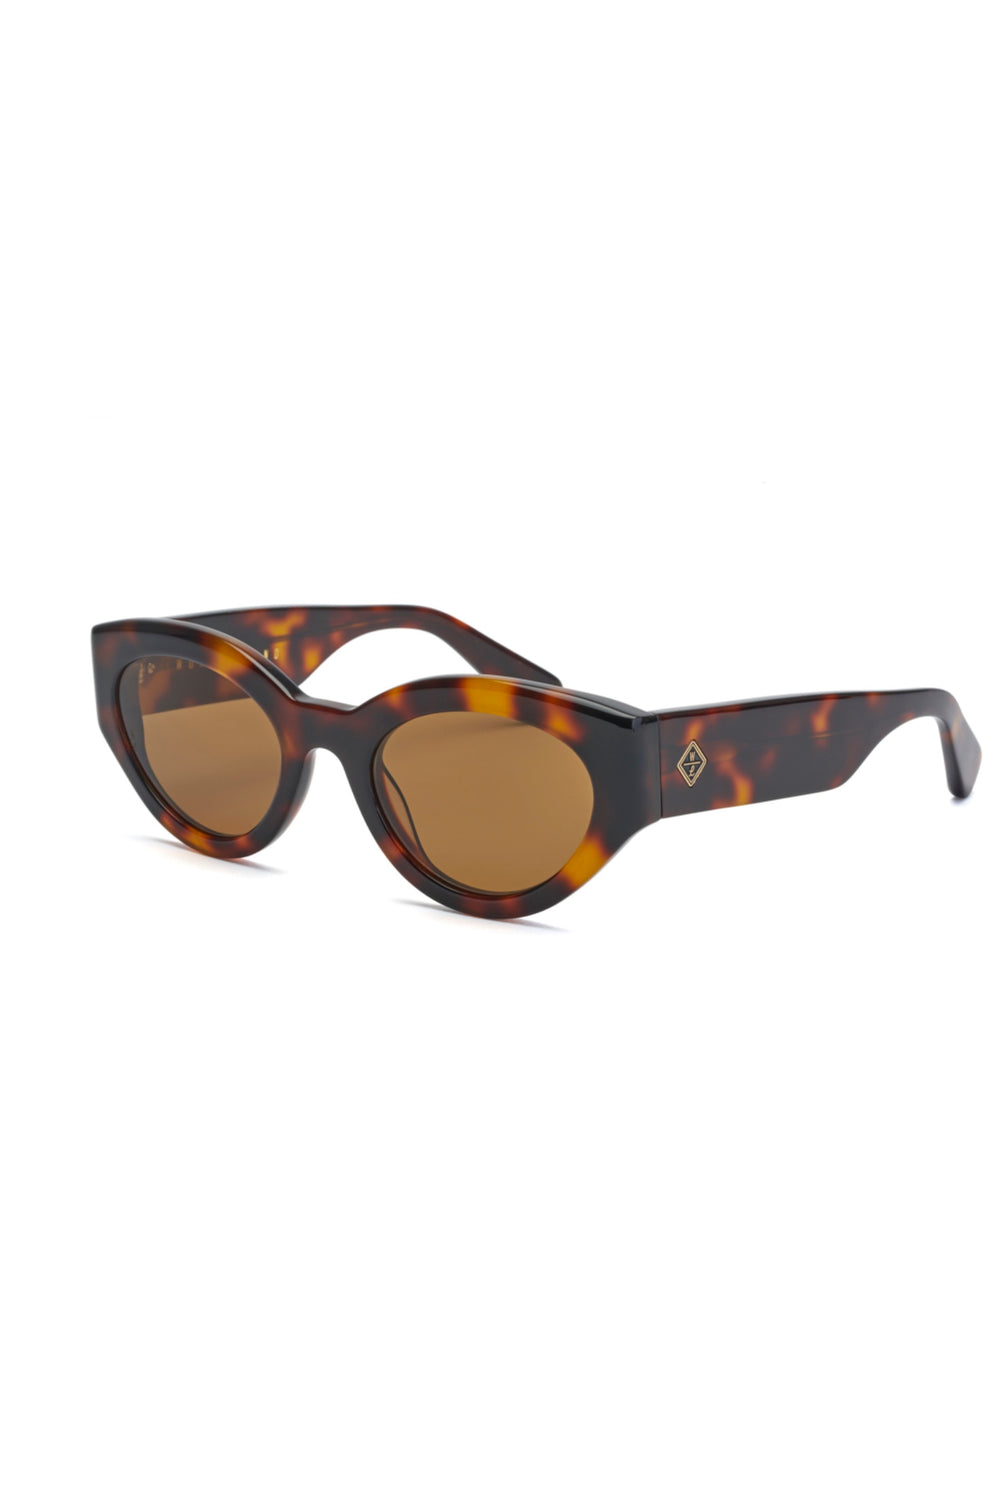 Brown Tortoise Bombay Beach Sunglasses